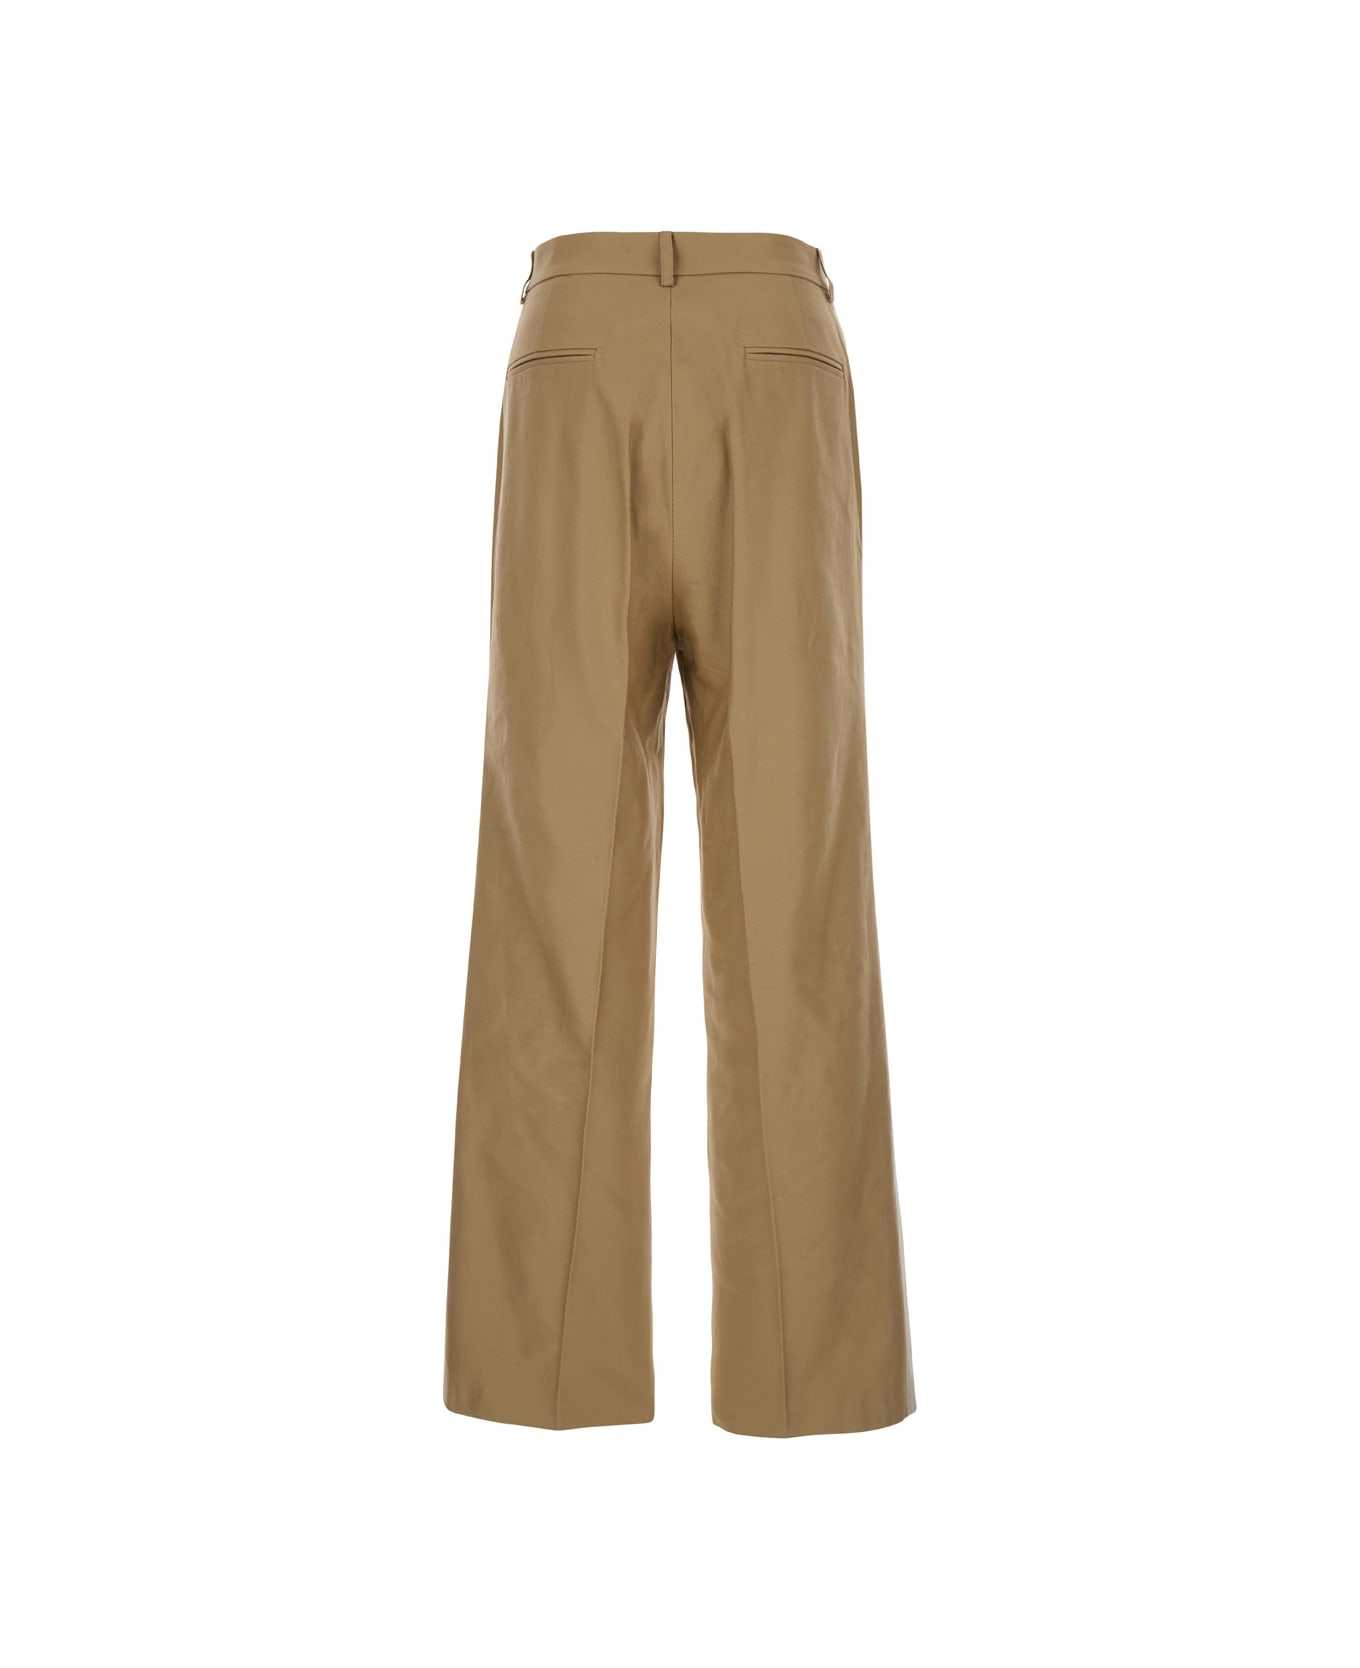 Bluemarble Gros Grain Tape Suit Pants - Beige